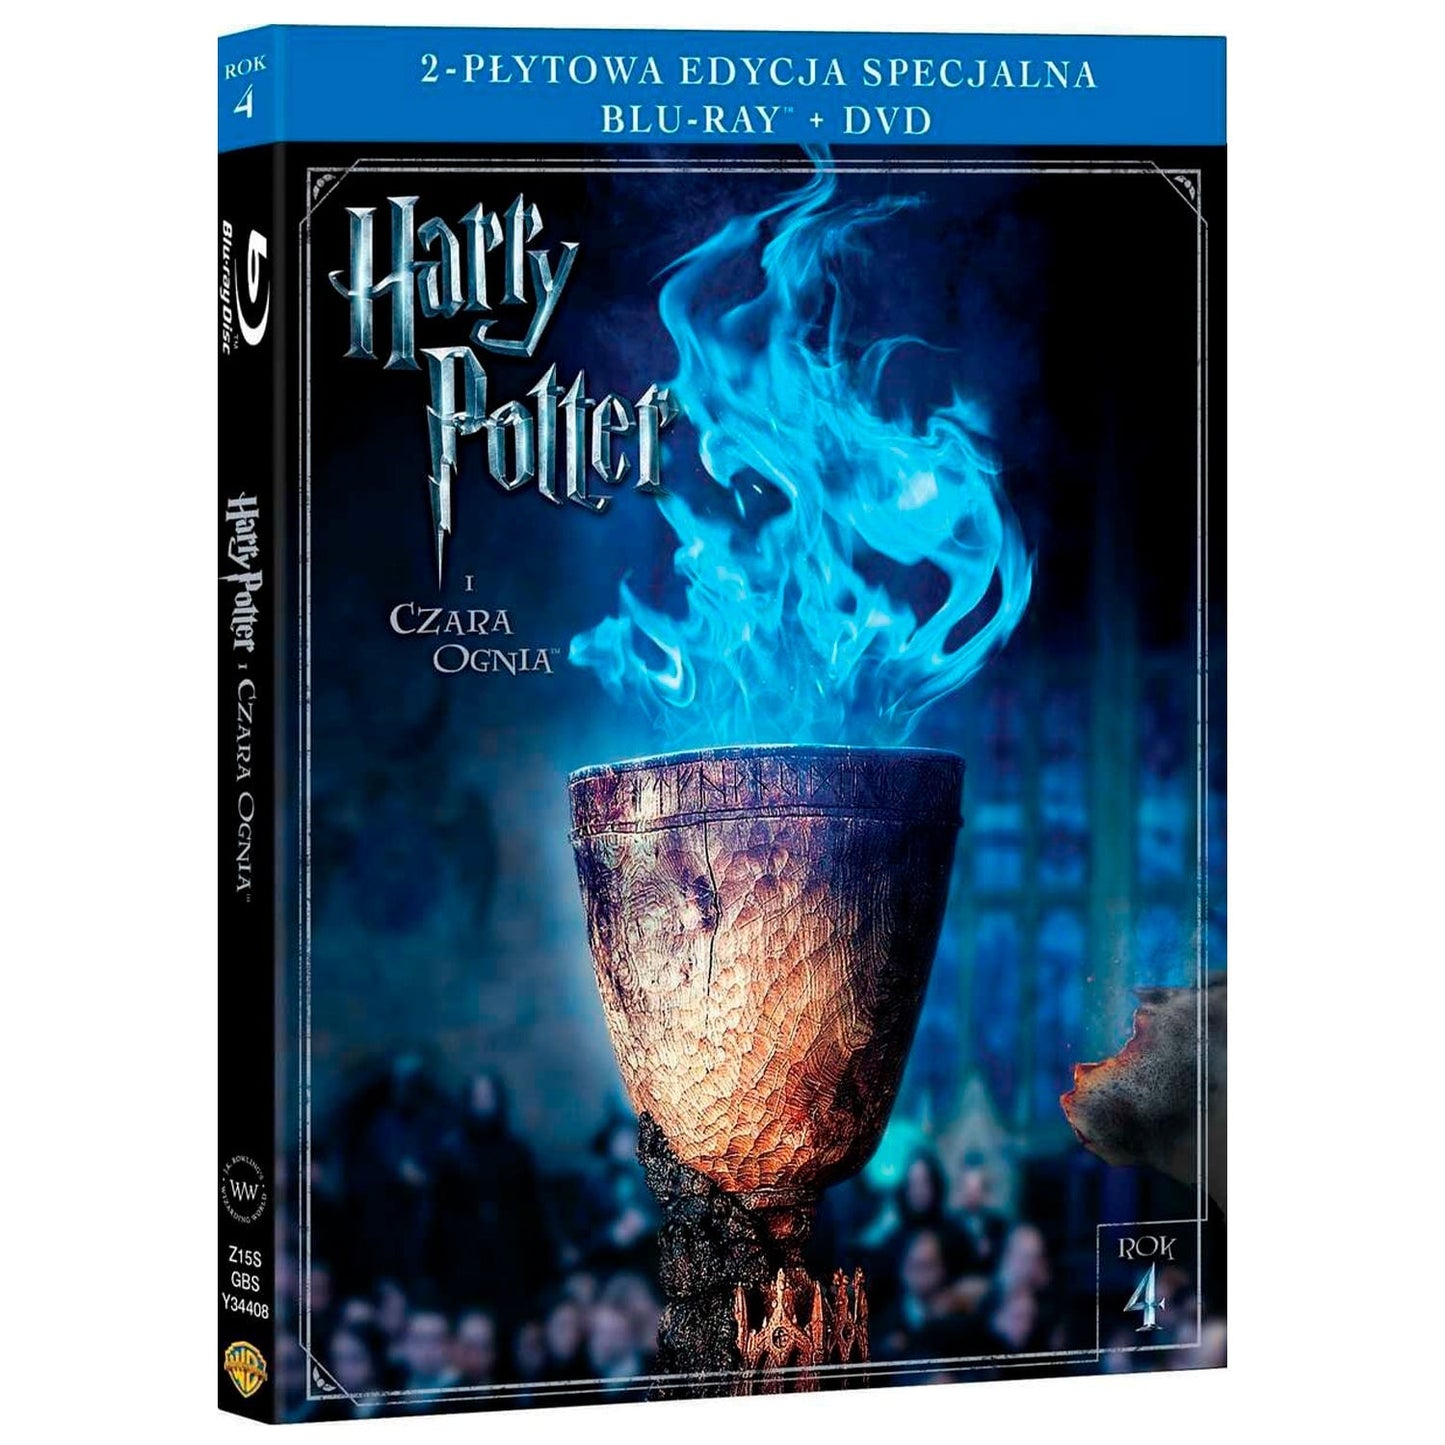 Гарри Поттер и Кубок огня (Blu-ray + DVD)